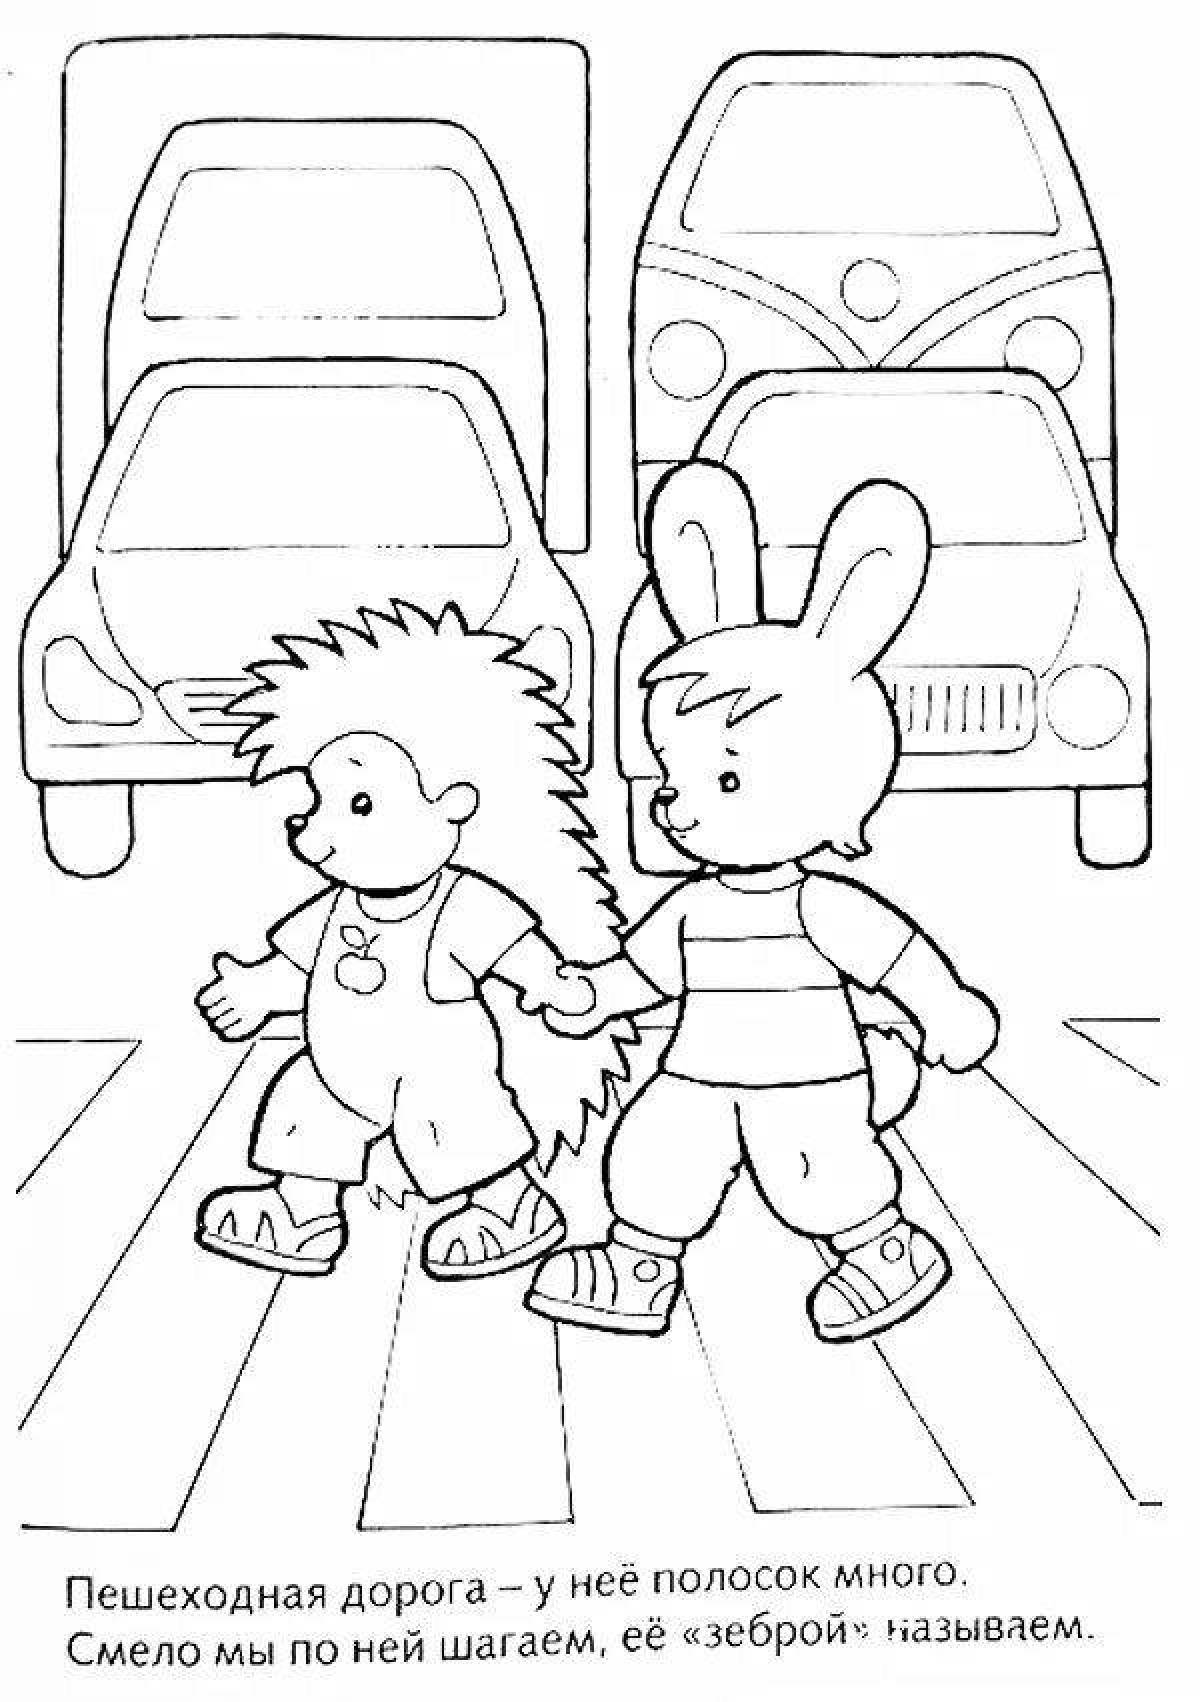 For children traffic rules for kindergarten #14